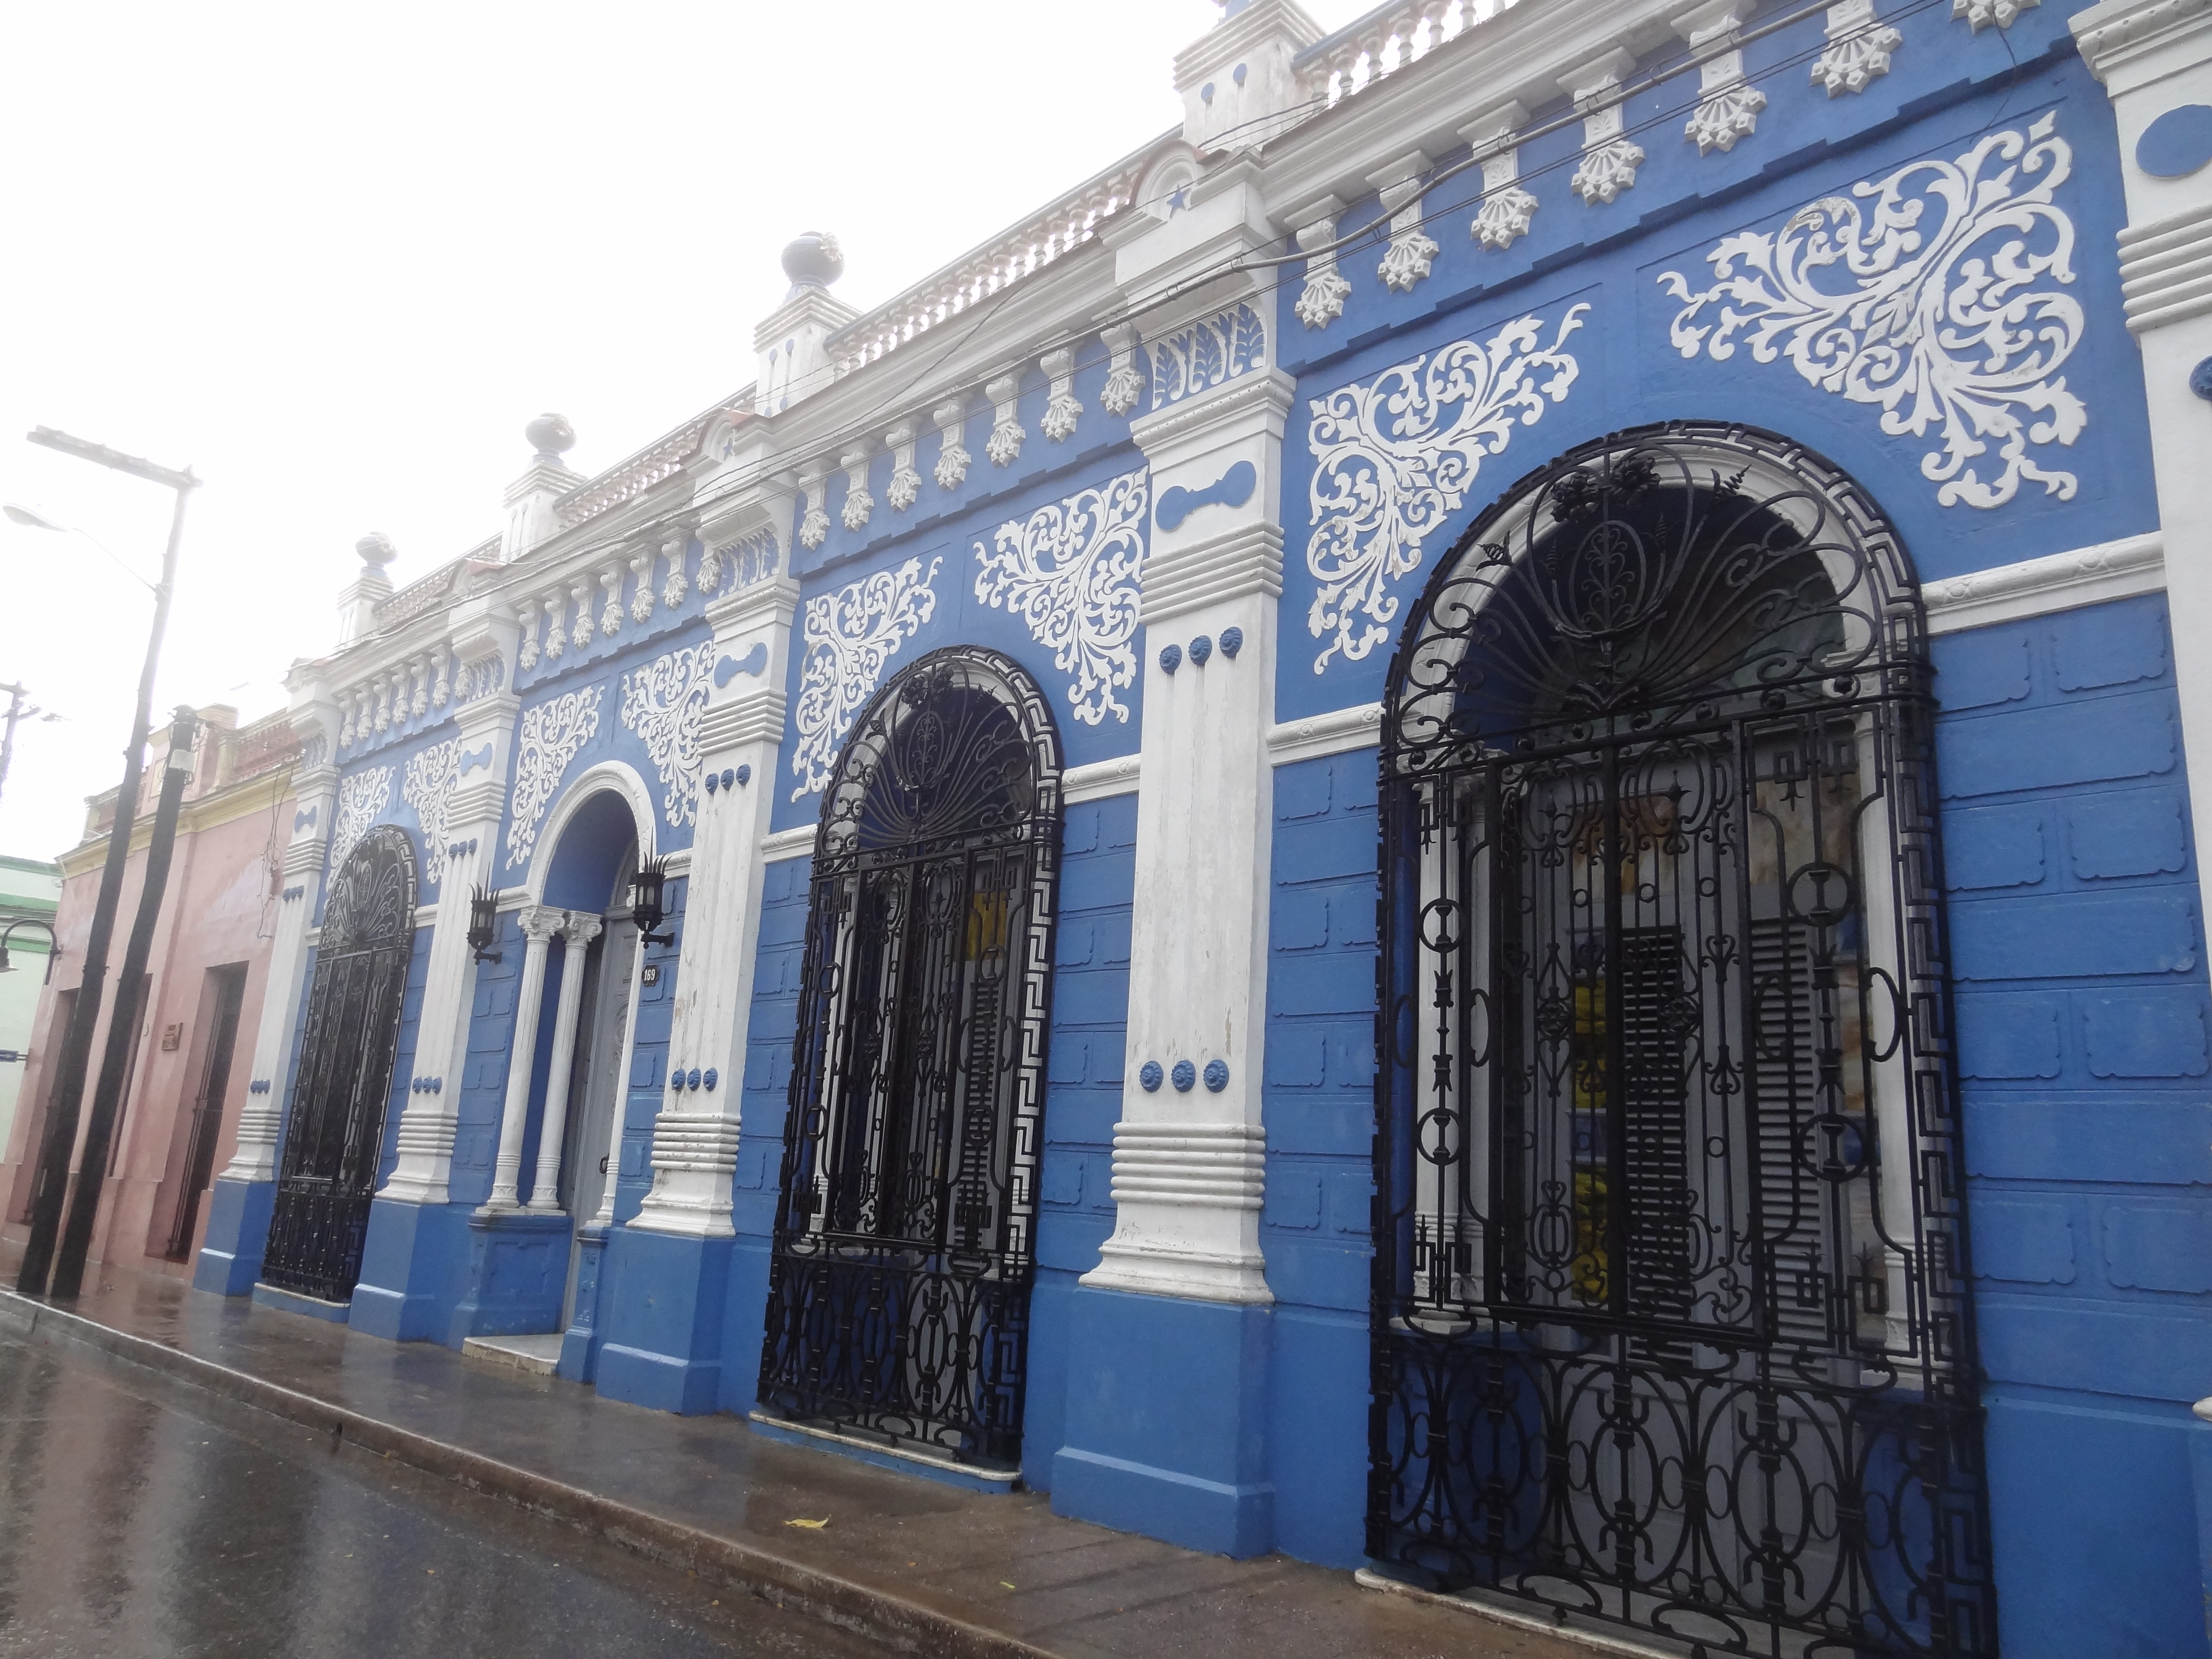 Très belle maison coloniale à Camaguey à Cuba photo blog voyage tour du monde https://yoytourdumonde.fr